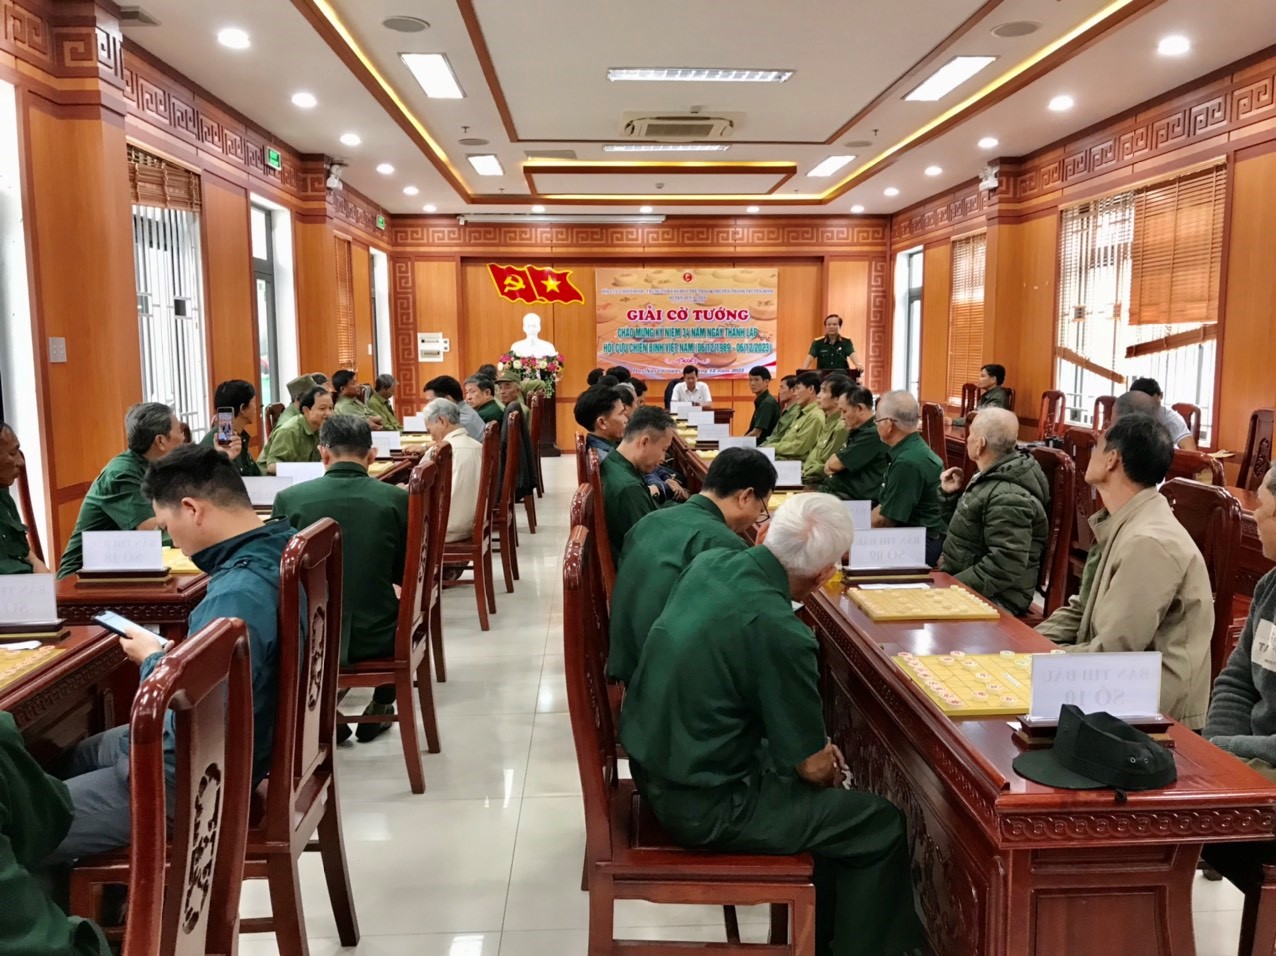 Quang cảnh Hội thi giải cờ tướng CCB huyện Duy Xuyên